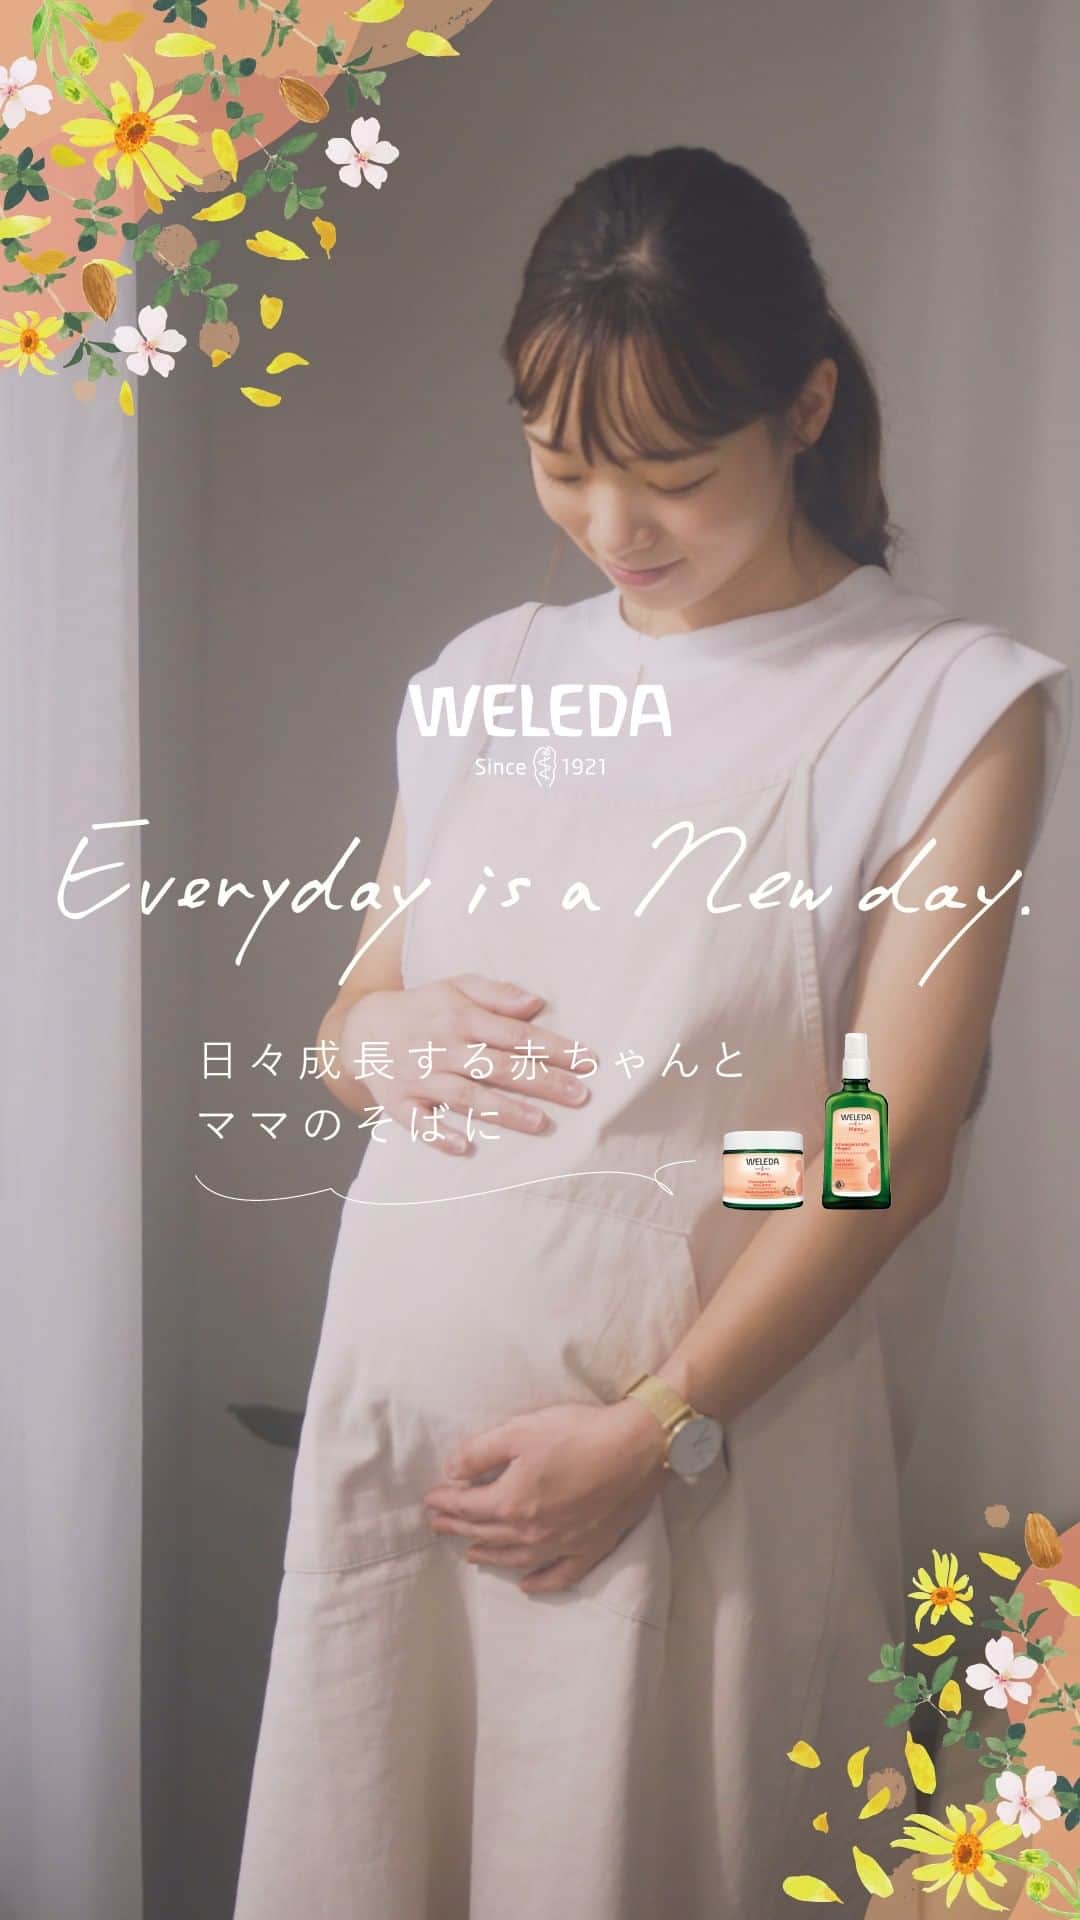 ヴェレダ Weleda Japanのインスタグラム：「【新製品 マザーズボディバター 妊婦さんの身体と心に寄り添って】  夏のケアも心地よく。  産前産後のためのボディケアクリーム「マザーズボディバター」。  身体だけなく、心も変化していく妊娠期。 マザーズボディバターは、日々変化する妊婦さんの身体と心に寄り添います。  ゆったりとした気分に導く香り、すっと馴染み、ベタつきにくく心地良いテクスチャー。  しっとりと潤って肌荒れを防ぎ、急激に変化するお腹周りなどの肌を柔らかに。  マッサージで、お腹の赤ちゃんとの繋がりを感じることも。  ボディケアをお考えの妊婦さんをはじめ、妊婦さんを気遣うパートナーやご家族、ご友人の皆さまは妊婦さんへのプレゼントにも。  妊婦さんだけでなく、夏の乾燥、肌荒れ予防やもっちりとした肌を保ちたい方にもおすすめです。  マザーズボディバターで多くの妊婦さんが心地よく妊娠期をお過ごしいただけますように。  妊婦さんの実際の使用感などの感想は、 #マザーズボディバター からご覧になれますので、ぜひご覧になってください。  気になる方は、💐を《 コメント 》で教えてくださいね。  ■マザーズボディバター ￣￣￣￣￣￣￣￣￣￣ https://www.weleda.jp/feature/mothers_bodybutter  日々、大きくなるお腹とともに、乾燥やつっぱり感などのトラブルも増える妊娠期に。  乾燥や肌荒れを予防し、肌を柔らかに保つボディケアクリーム。  クリームがスッとお肌になじむので、忙しいときの時短ケアにもおすすめ。  穏やかな香りに包まれて、赤ちゃんとの繋がりを感じるマッサージが穏やかな時間に。  ＜ポイント＞ ・100％天然由来成分 ・ 素早く肌になじむ処方 ・ 妊娠中の女性に選ばれたやさしいフローラルの香り*1 ・ 敏感肌テスト済*2 ・ 産後の肌の引き締めケアにも  *1　精油の香りの構成と香りの強さに関する試験に妊娠中の女性52人が参加し選びました。 *2　全ての方に皮膚刺激が起こらないということではありません。  ＜不使用成分＞ 合成保存料 / 合成着色料 / 合成香料 / 鉱物油 / 石油系原料 / シリコーン  詳細は、プロフィール @weleda_japan のリンクから。  #ヴェレダ#WELEDA#オーガニック#オーガニックコスメ#植物療法#シュタイナー#ホリスティック#妊娠初期#妊娠中期#妊娠5ヶ月#妊娠6ヶ月#妊娠7ヶ月#妊娠#妊娠線#妊娠線予防#妊娠予防クリーム#organiccosmetics #유기농#プレママ#プレママさんと繋がりたい#プレママライフ#プレママプレゼント#保湿#天然由来成分」